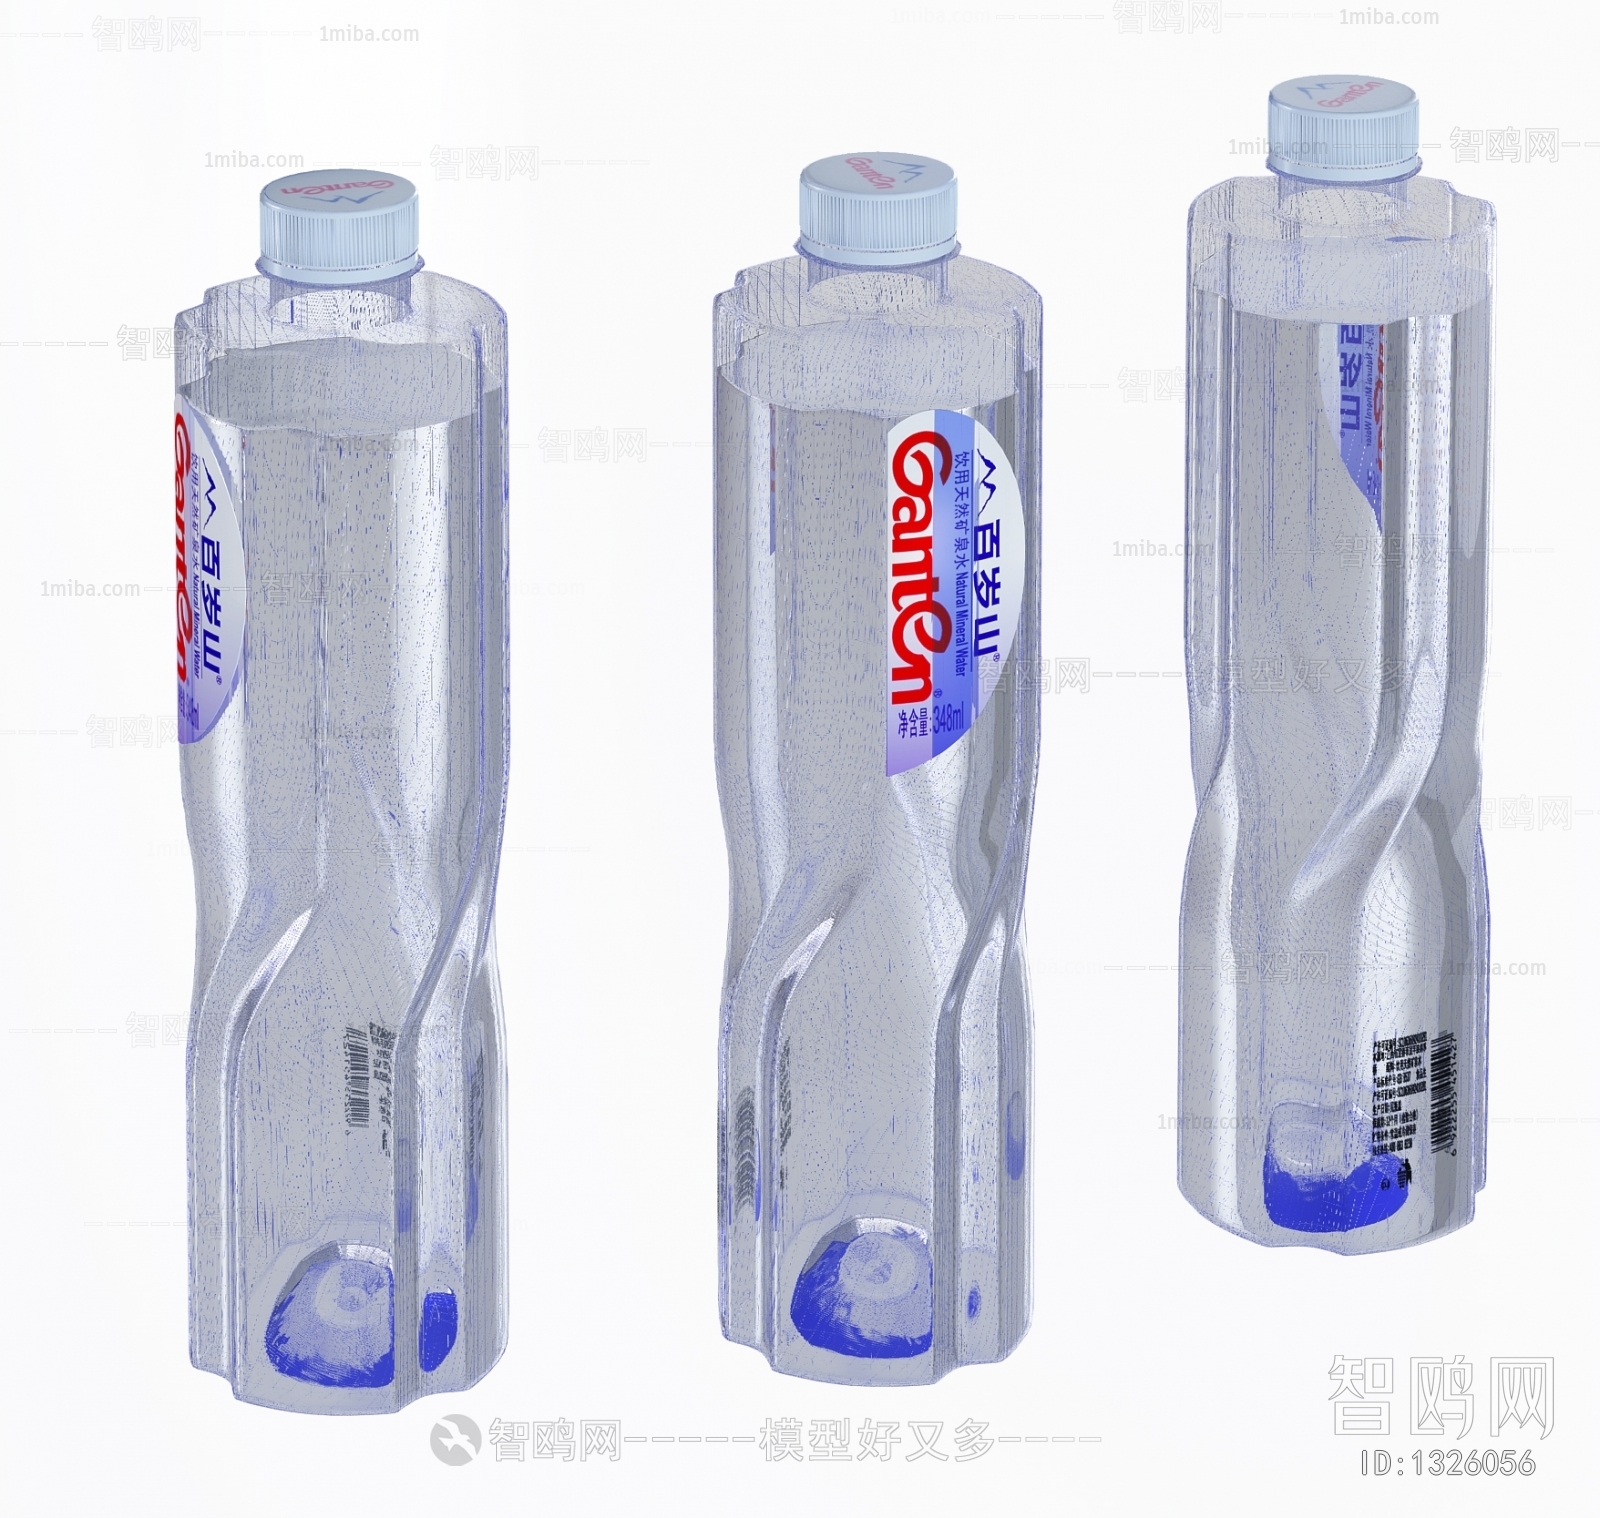 Modern Bottles